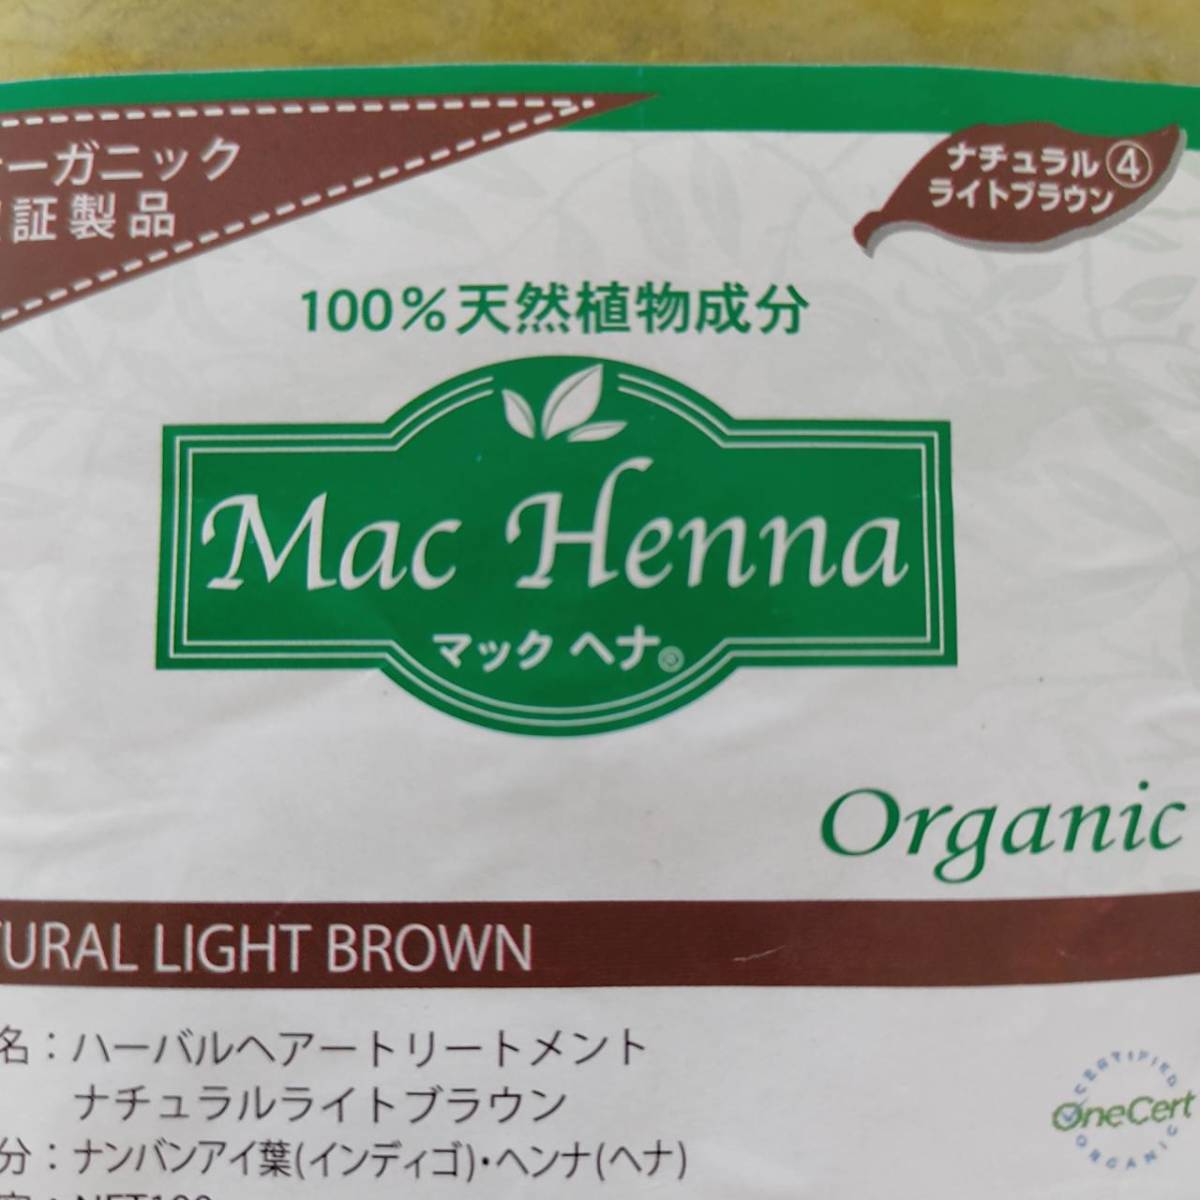 数量限定価格!! マックヘナお徳用 ナチュラルブロンズ #3 400g マックプランニング Mac Henna USDAオーガニック認証  100％天然植物成分